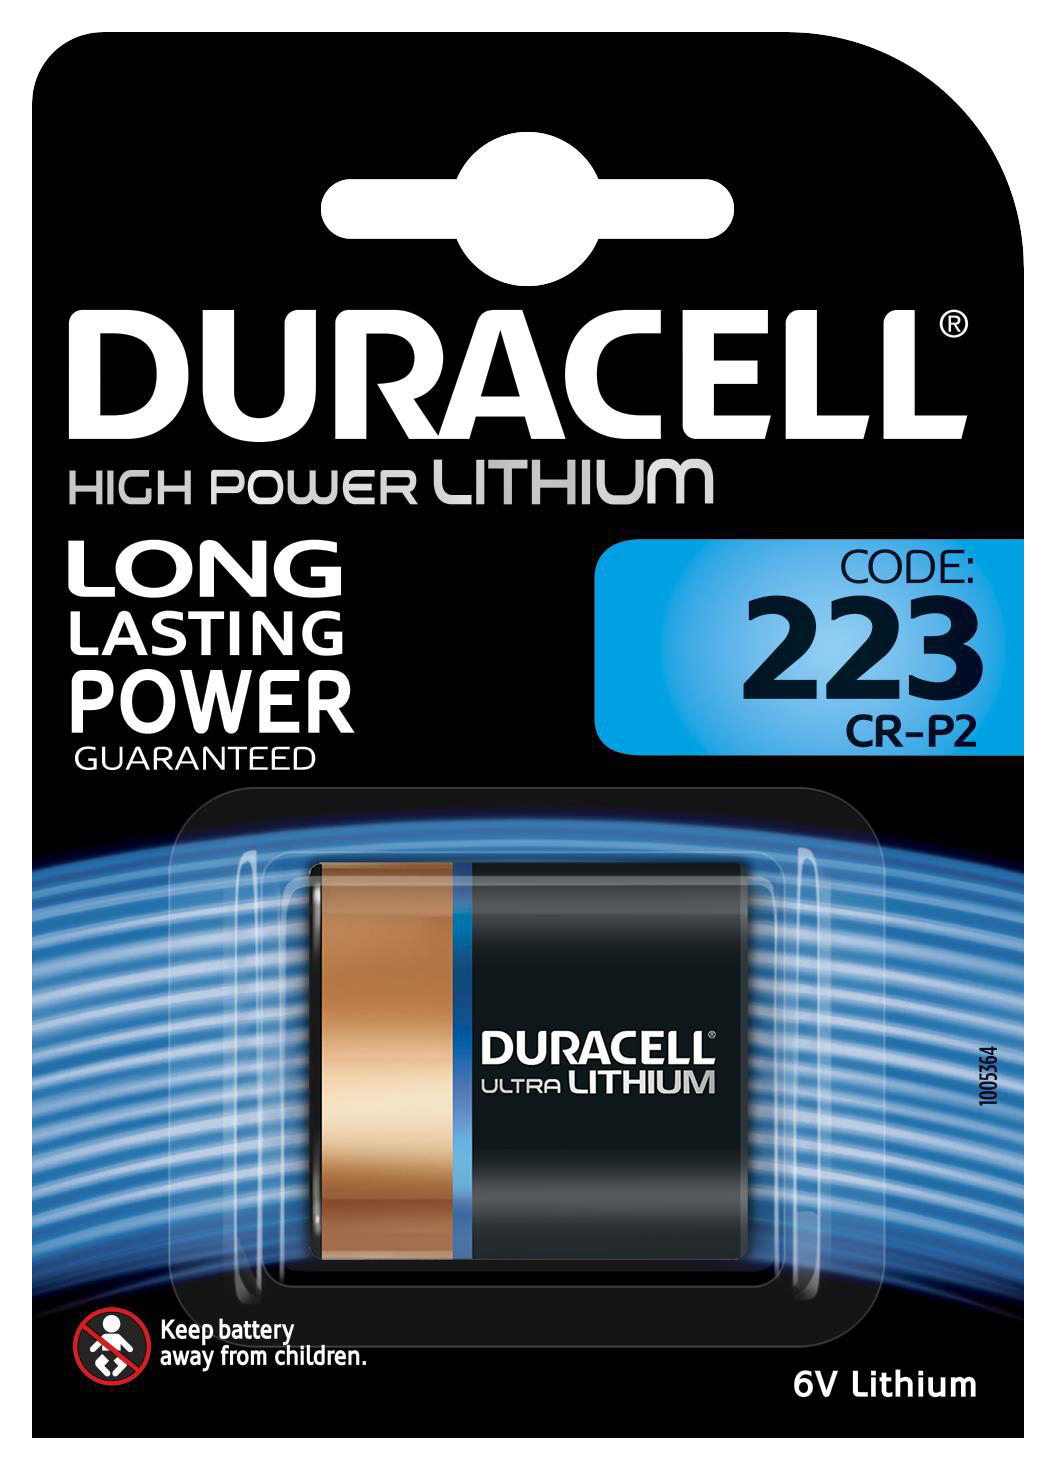 Specialty Batterie, 1 Lithium, 6 Stück 223 Ultra Volt DURACELL